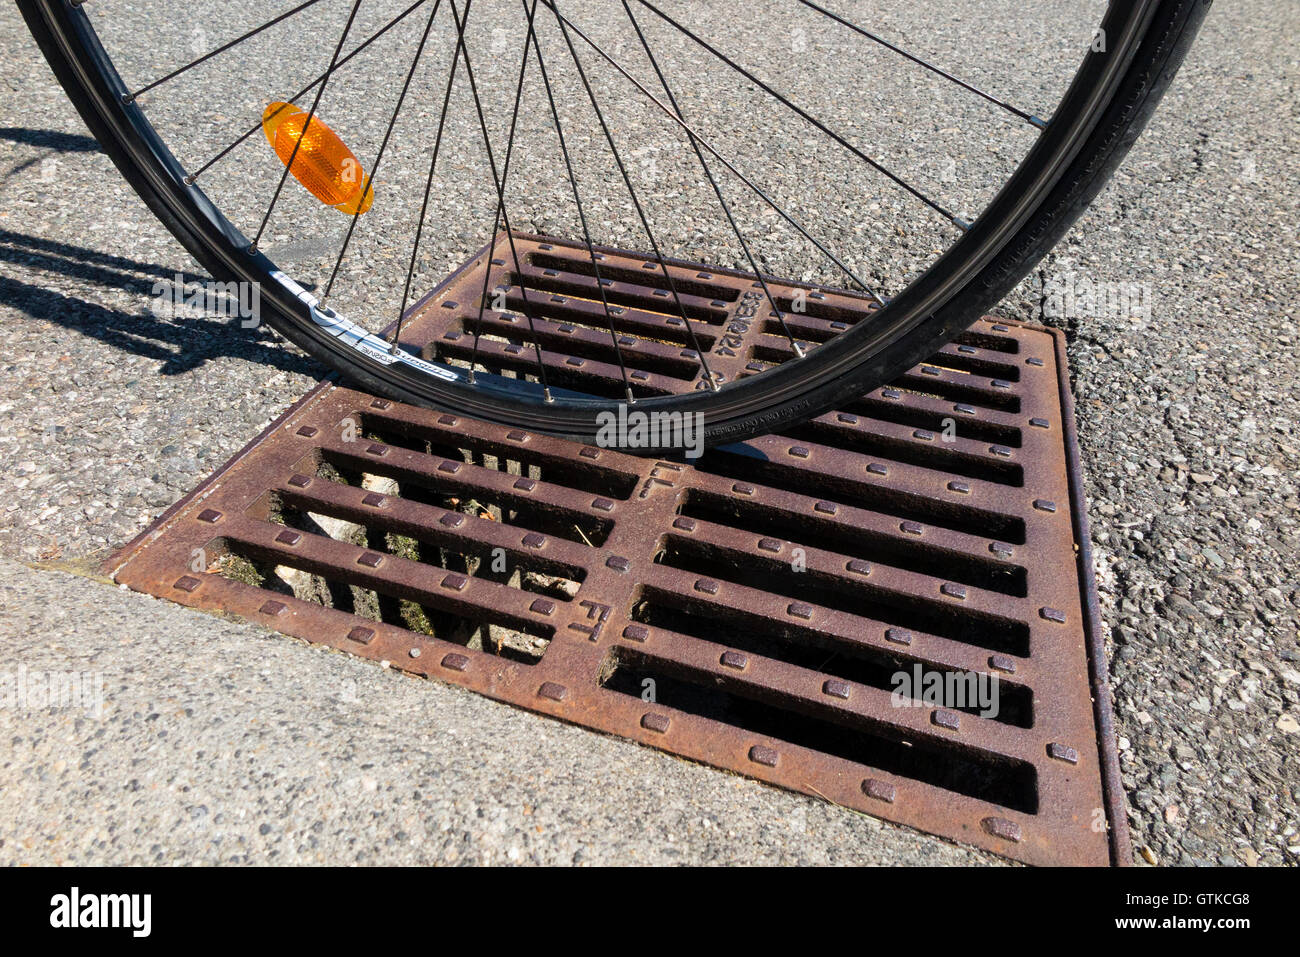 Rennrad Fahrrad fahren Rad das gesteckt hat in ein Abfluss Gitter Eisen Cover mit Schlitze in die Richtung der Rinne platziert. Stockfoto